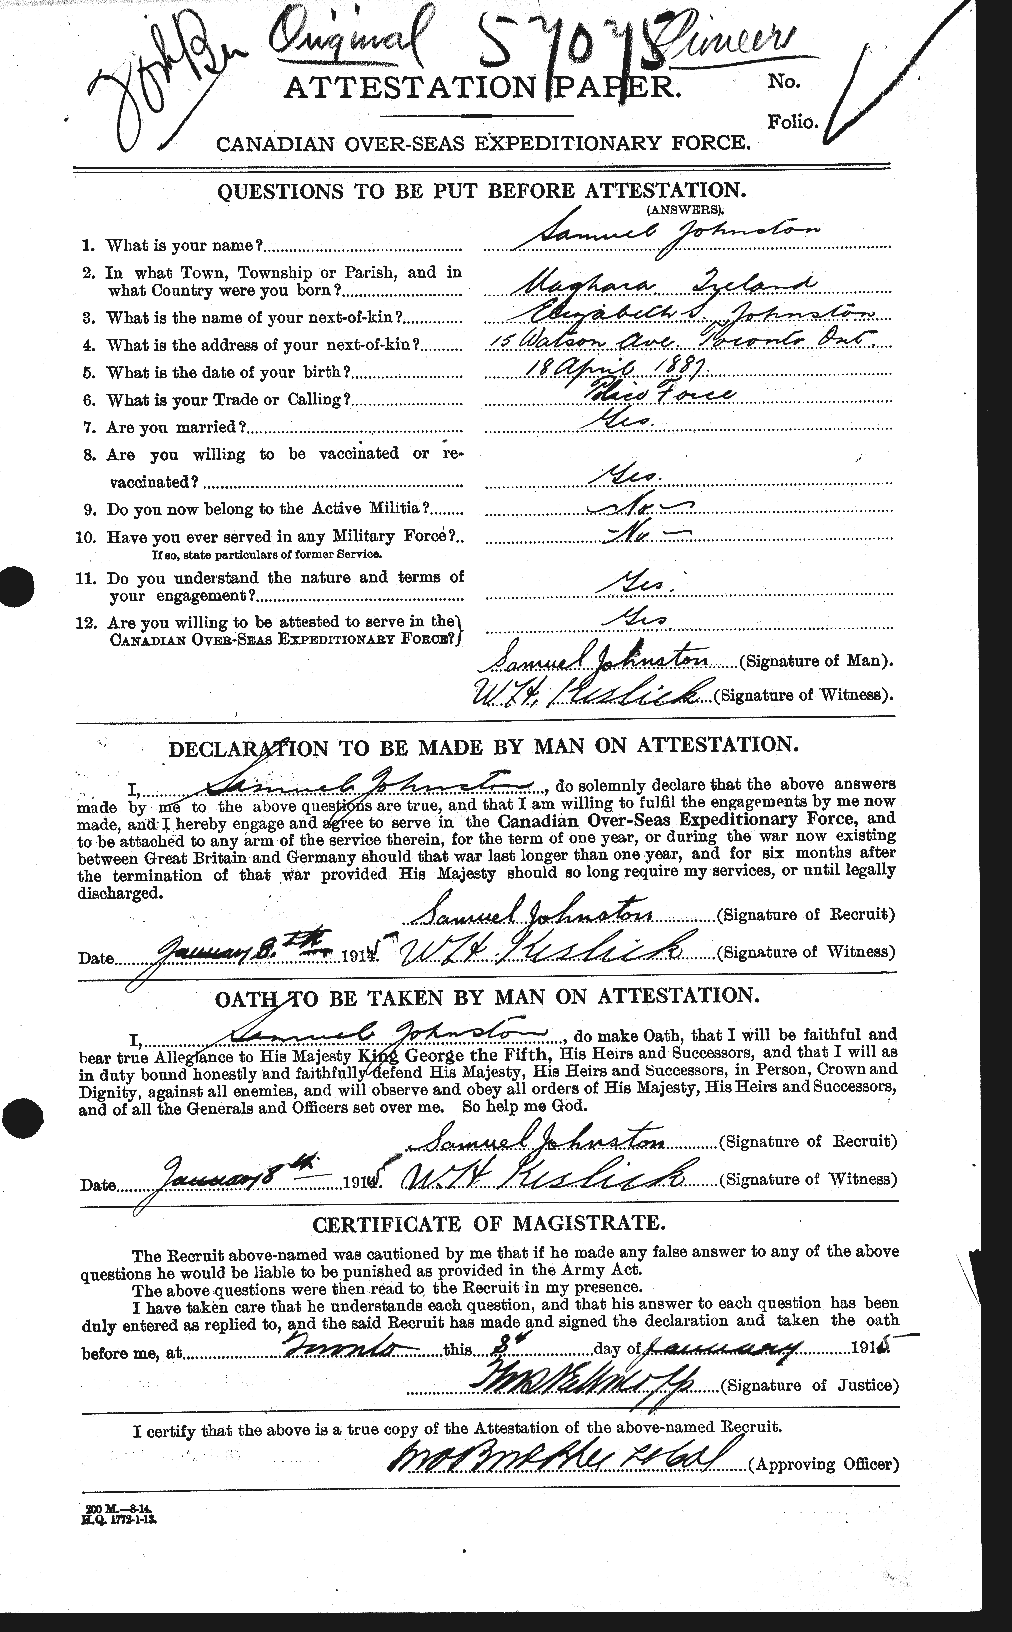 Dossiers du Personnel de la Première Guerre mondiale - CEC 427082a